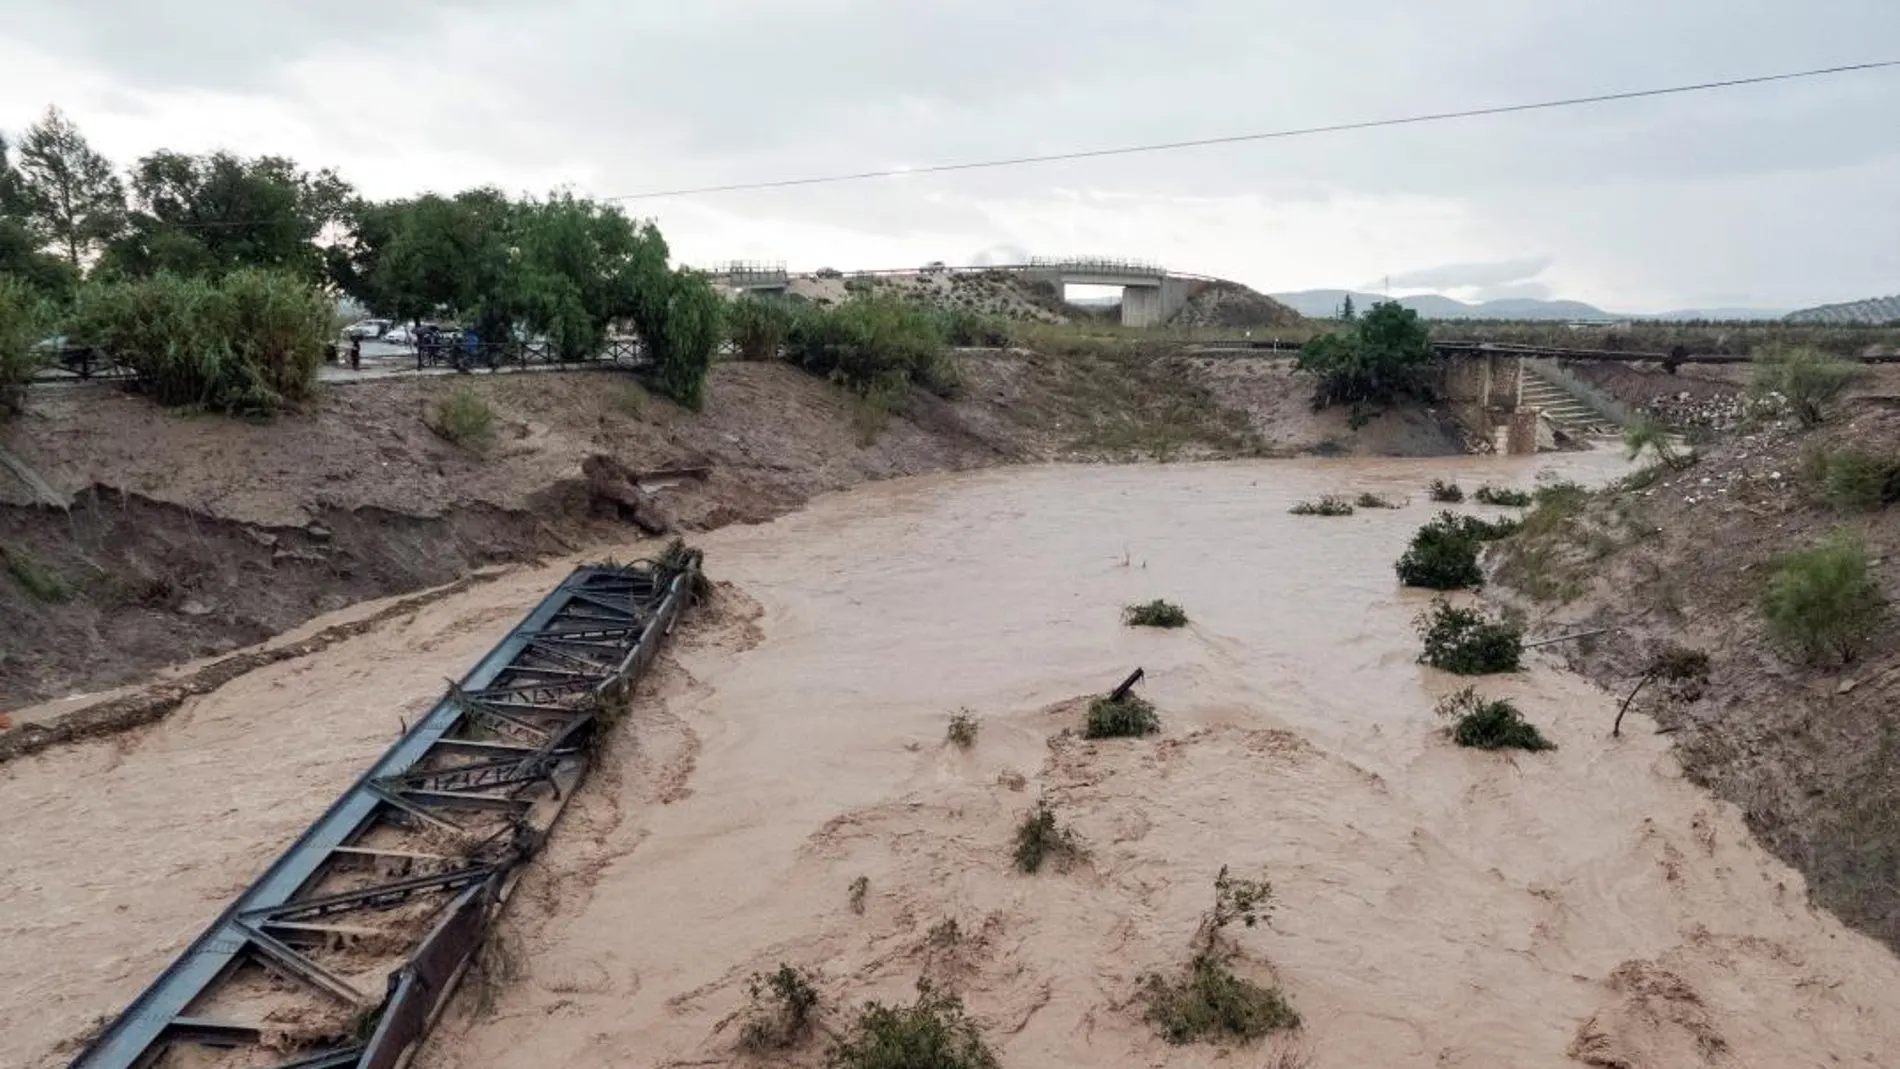 El aumento del cauce de rio Blanco a su paso por la localidad almeriense de Aguadulce provocó la rotura y arrastre del puente de la via del tren y el cableado, provocando cortocircuitos en la zona